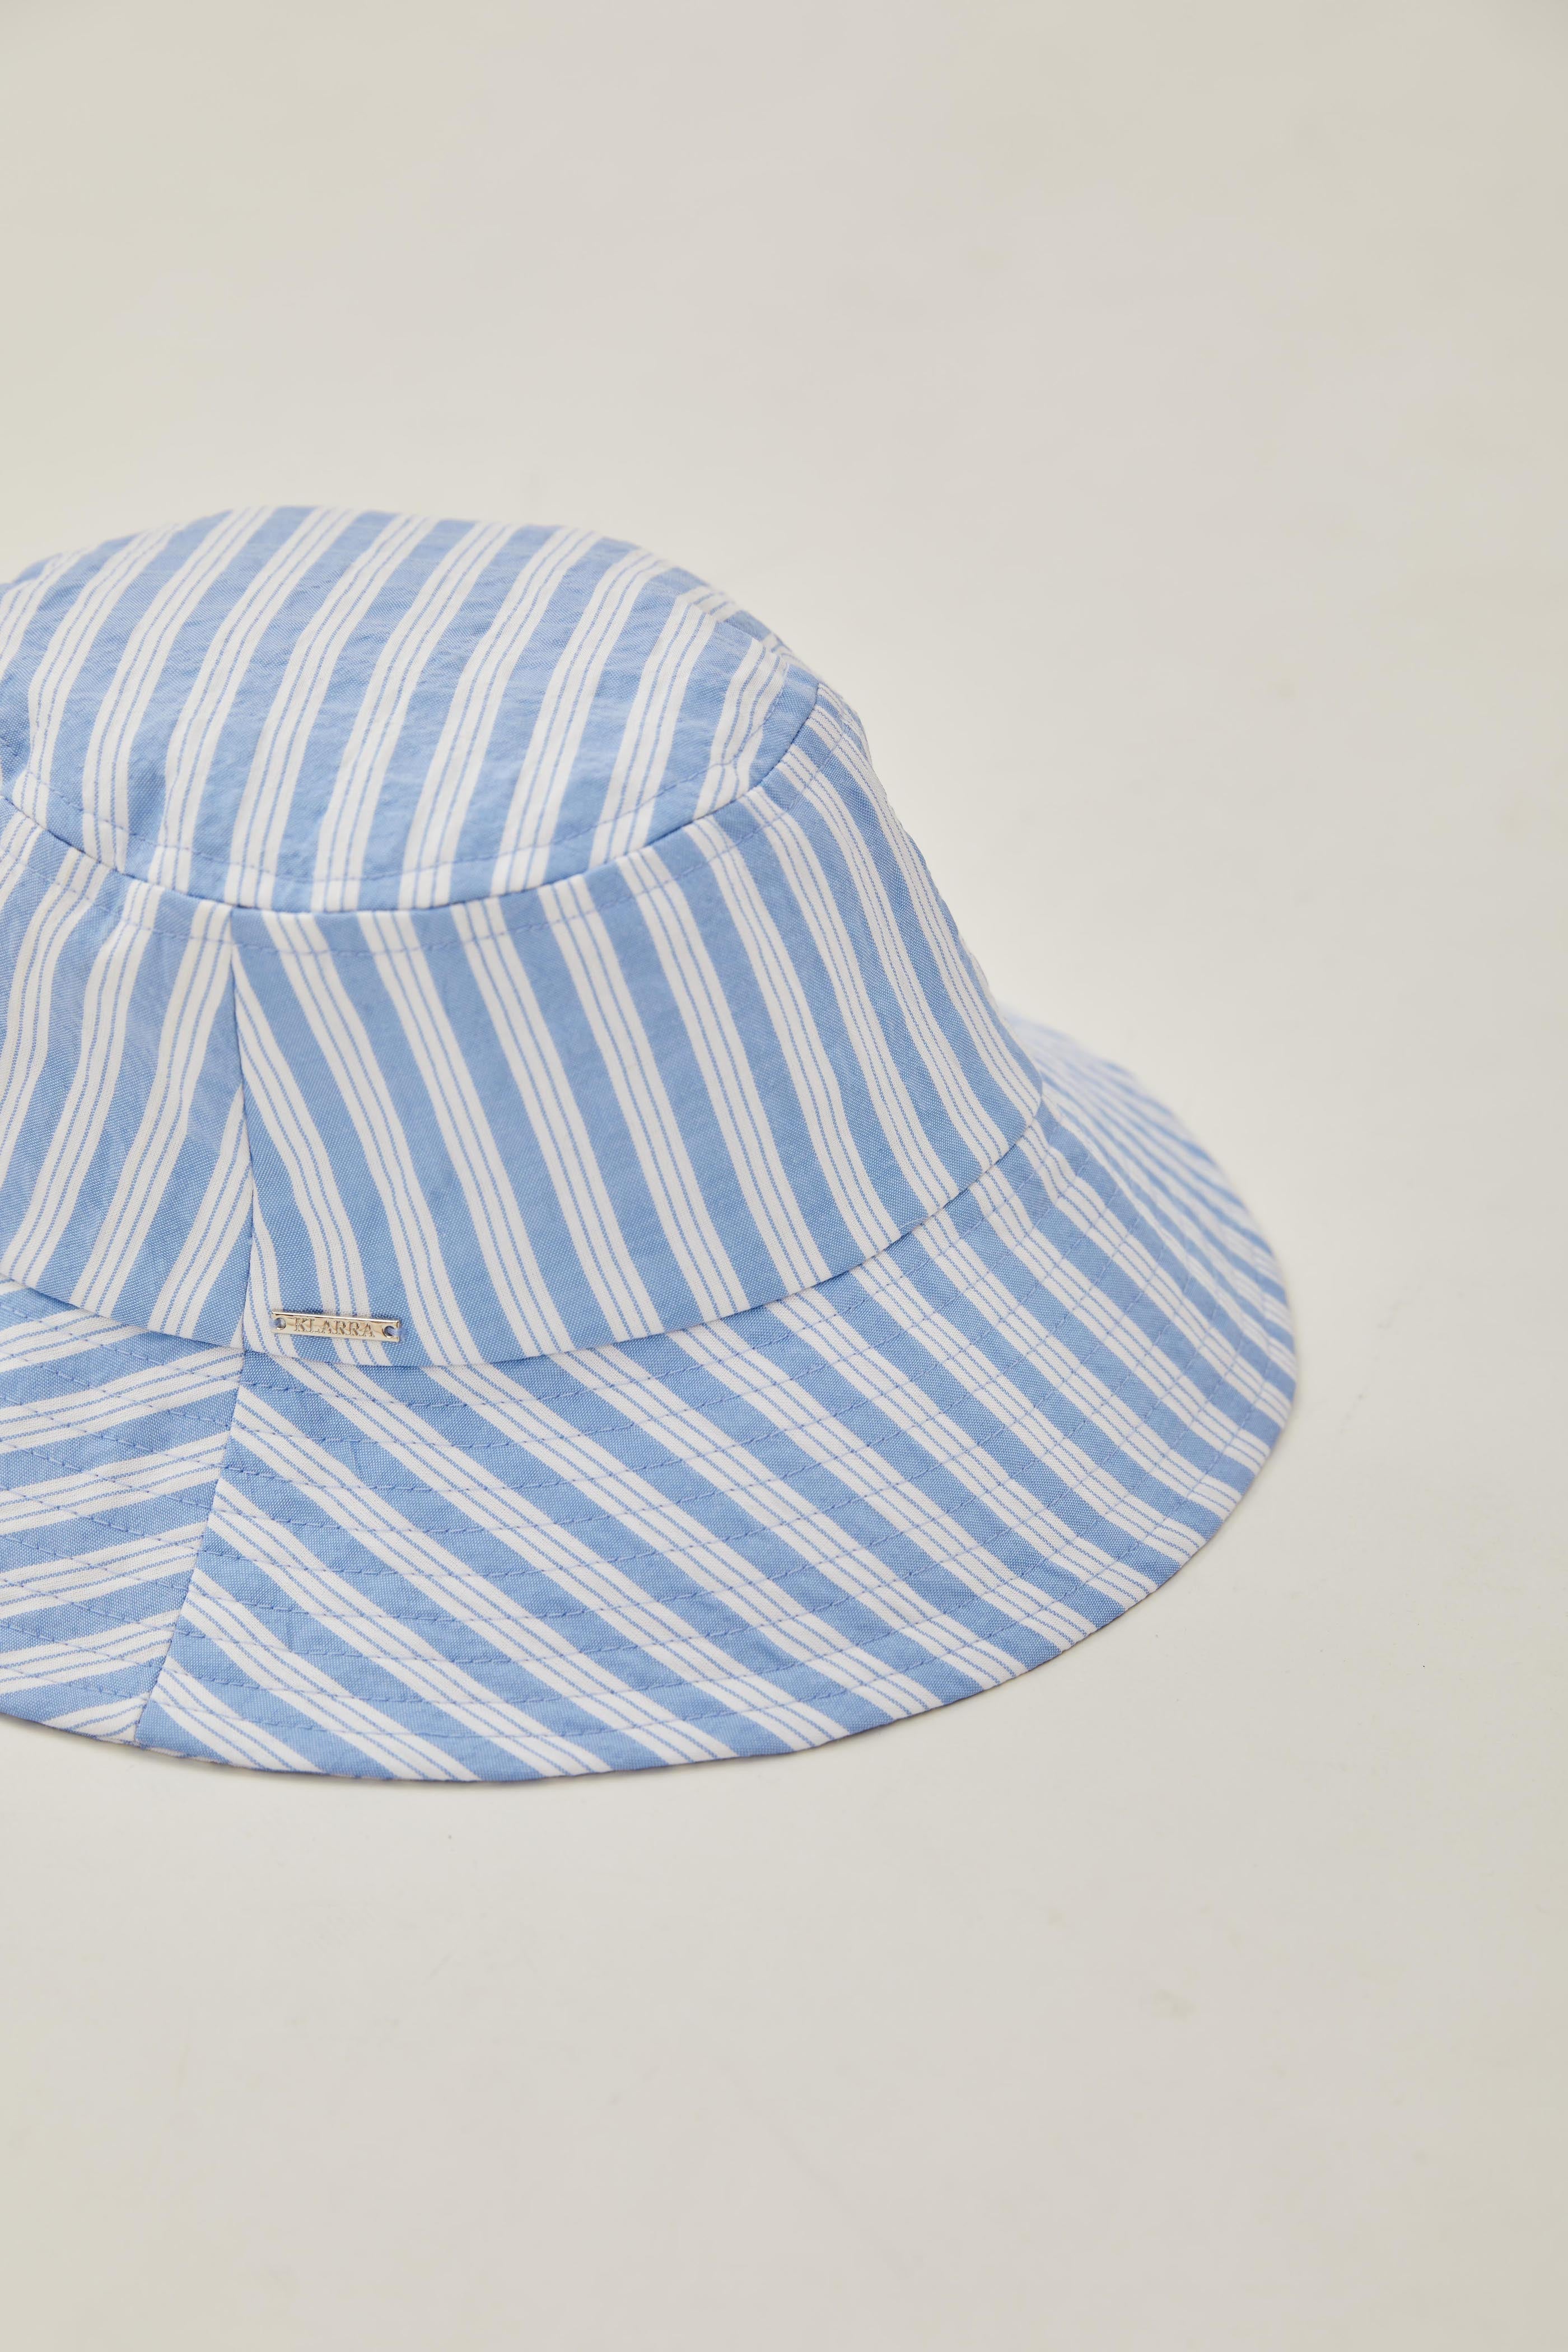 Bucket Hat in Stripe Blue